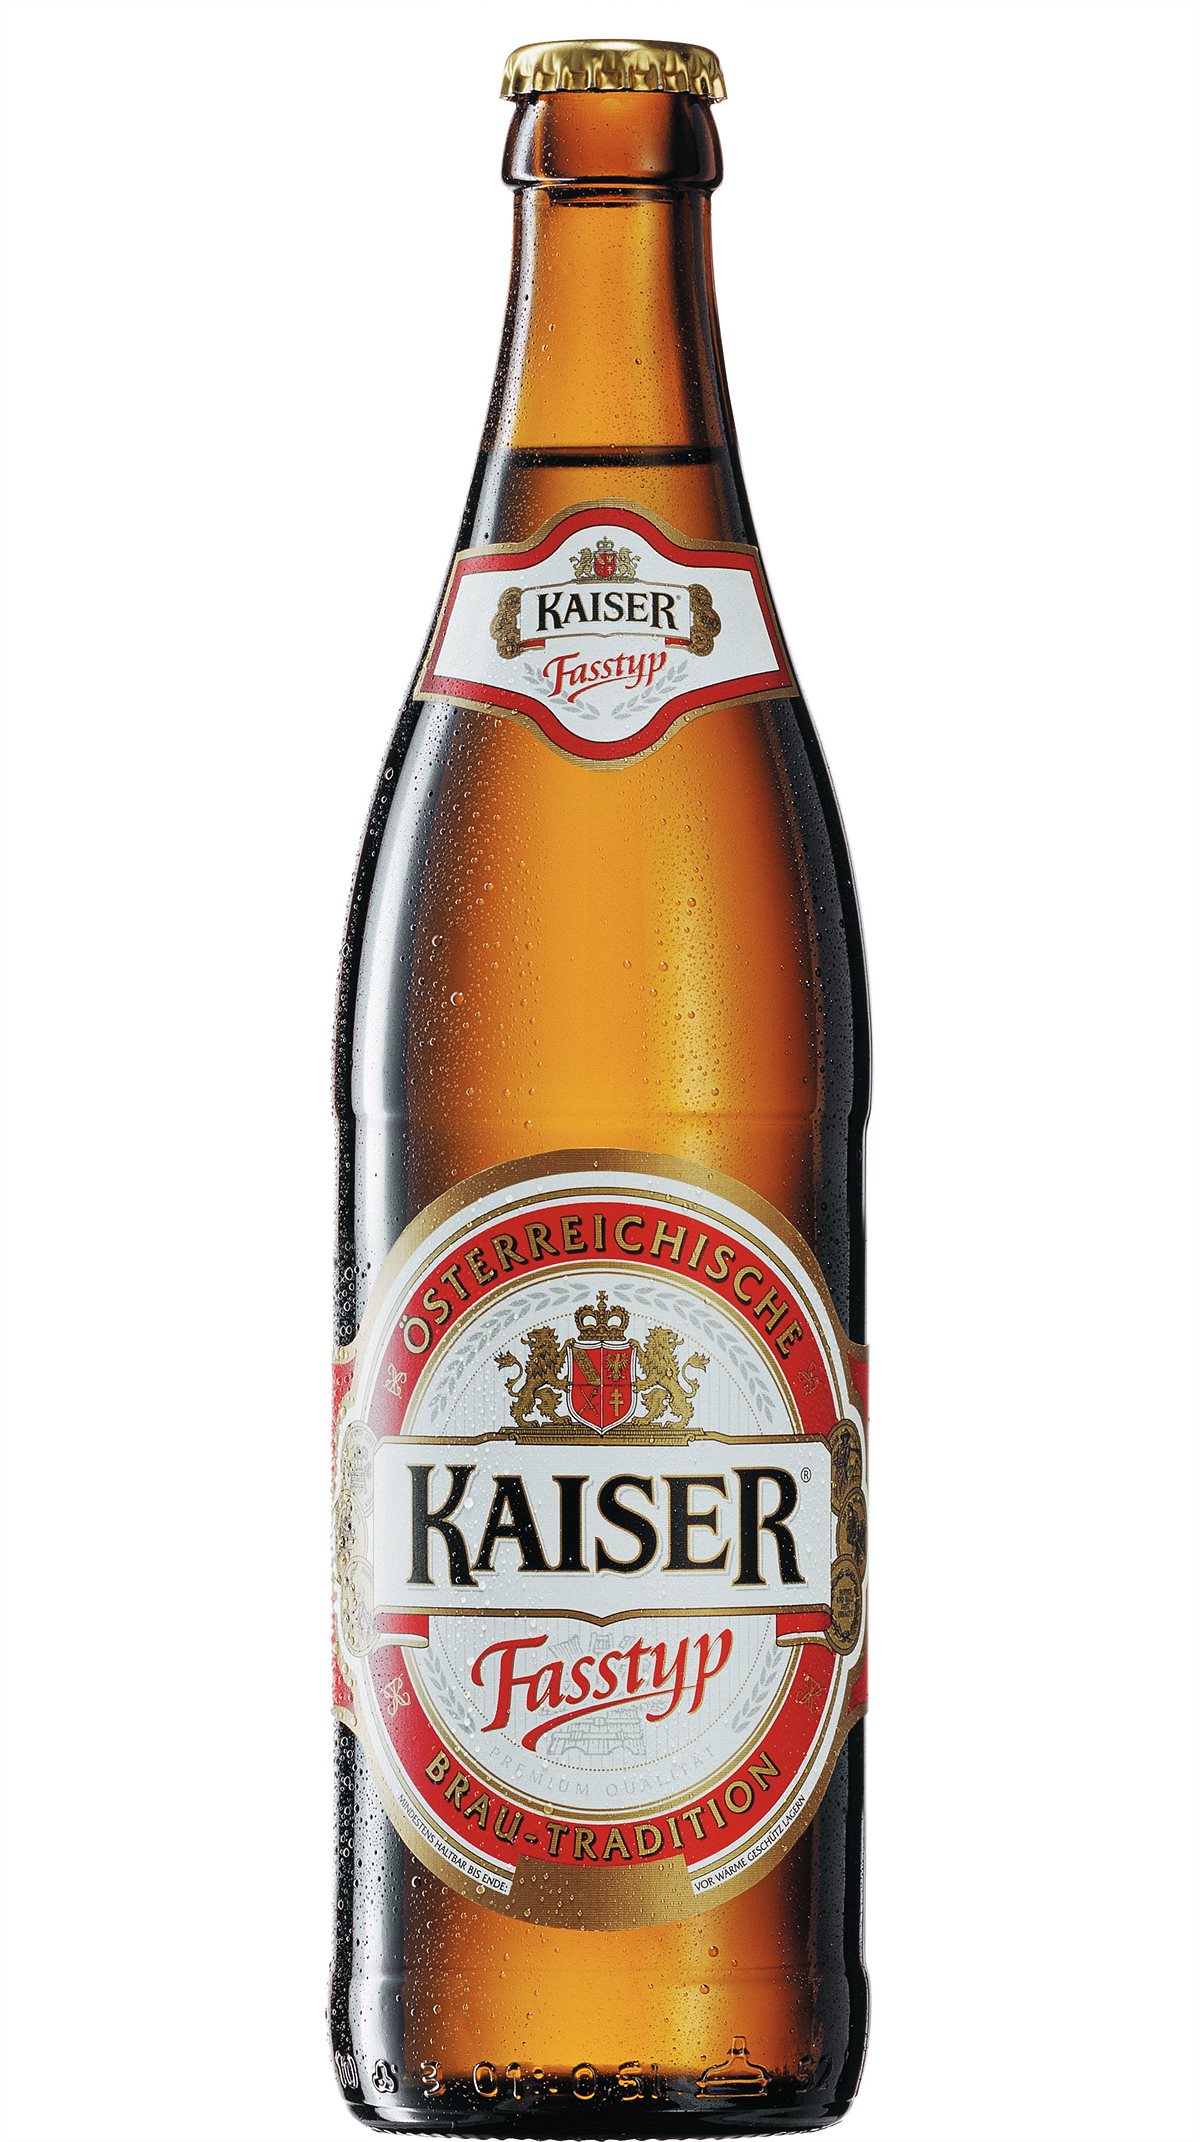 In der Kategorie „Austrian-Style Märzen“ konnte das Kaiser Fasstyp aus der Brauerei Wieselburg überzeugen, wofür es den Silber Award erhielt.